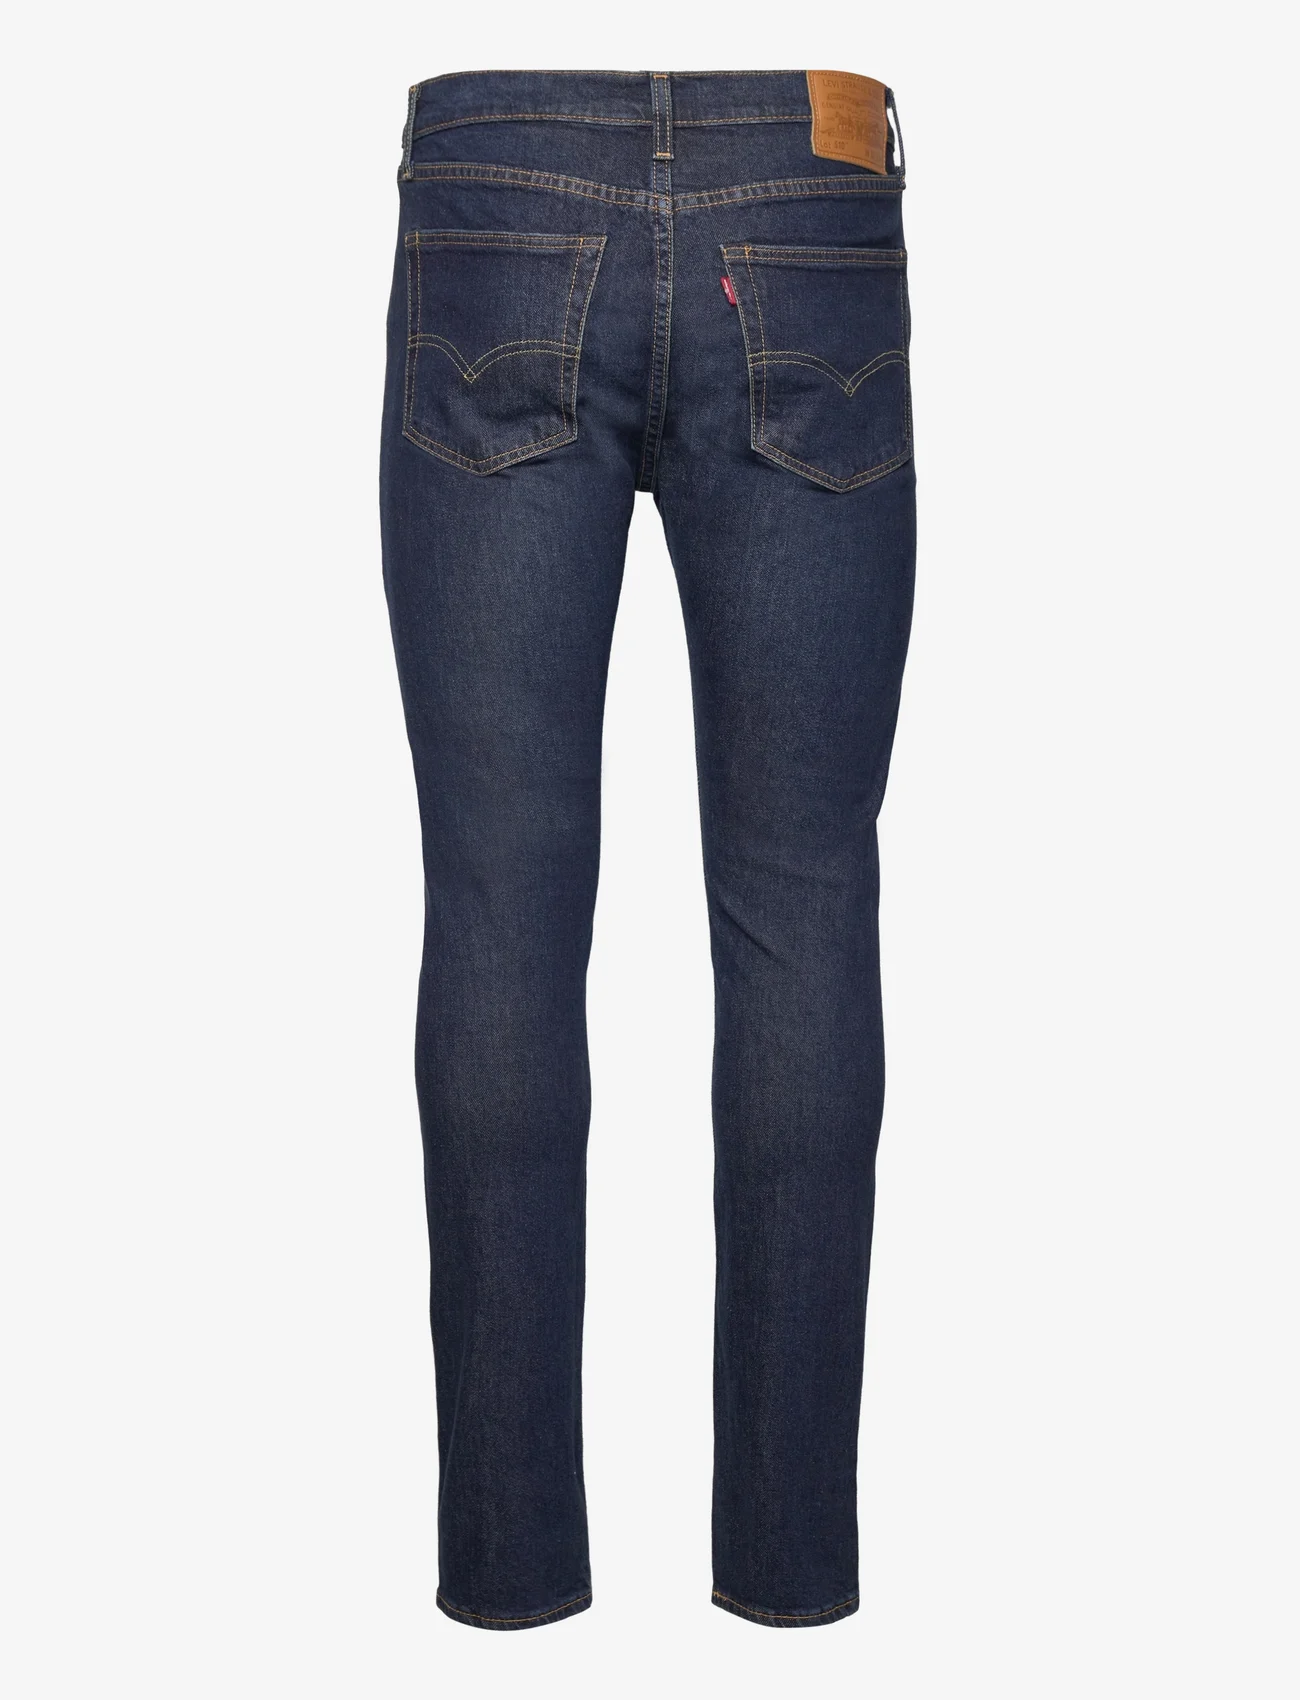 LEVI´S Men - 510 SKINNY Z1485 MEDIUM INDIGO - skinny jeans - med indigo - worn in - 1